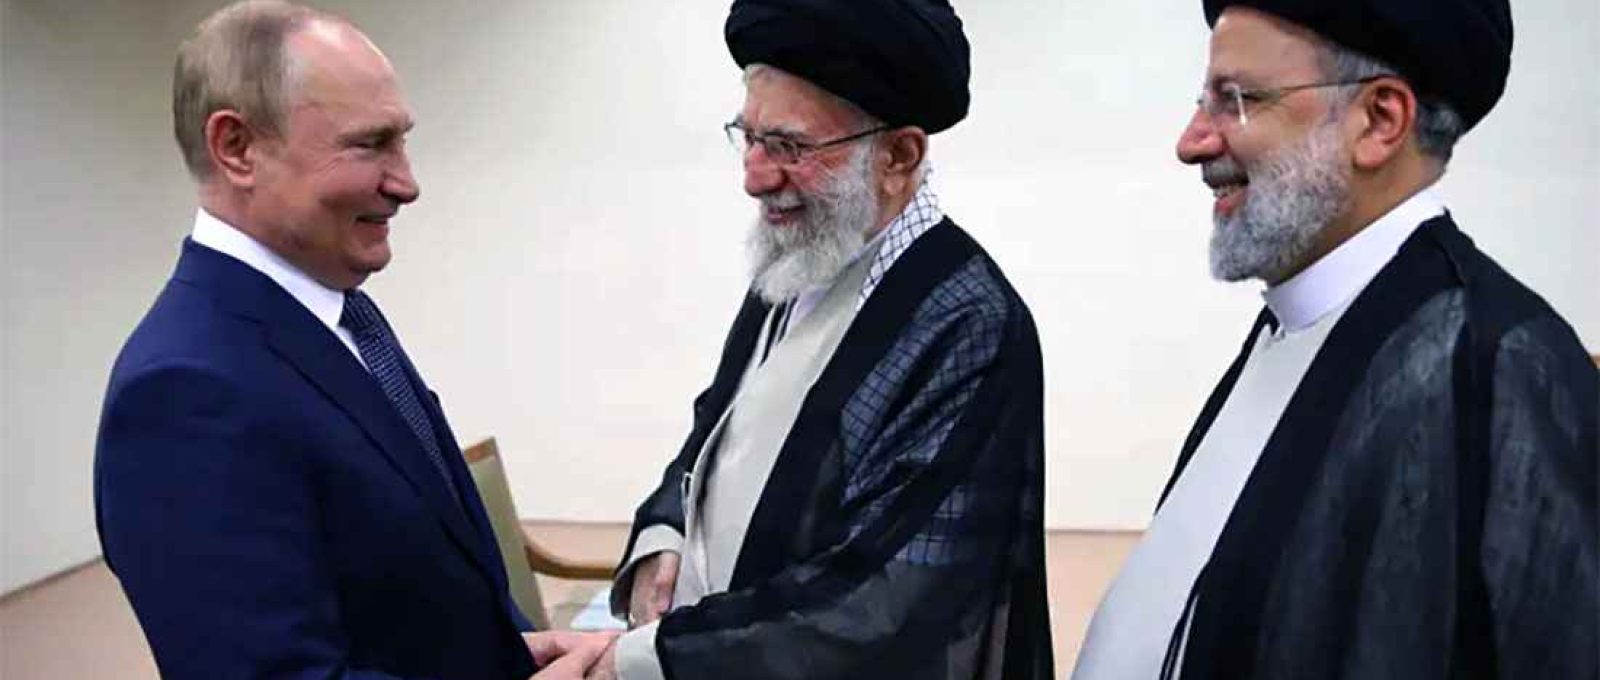 O líder supremo do Irã, aiatolá Ali Khamenei, ao centro, cumprimenta o presidente da Rússia, Vladimir Putin, em Teerã, com o presidente iraniano, Ebrahim Raisi, à direita (Escritório do Líder Supremo Iraniano).